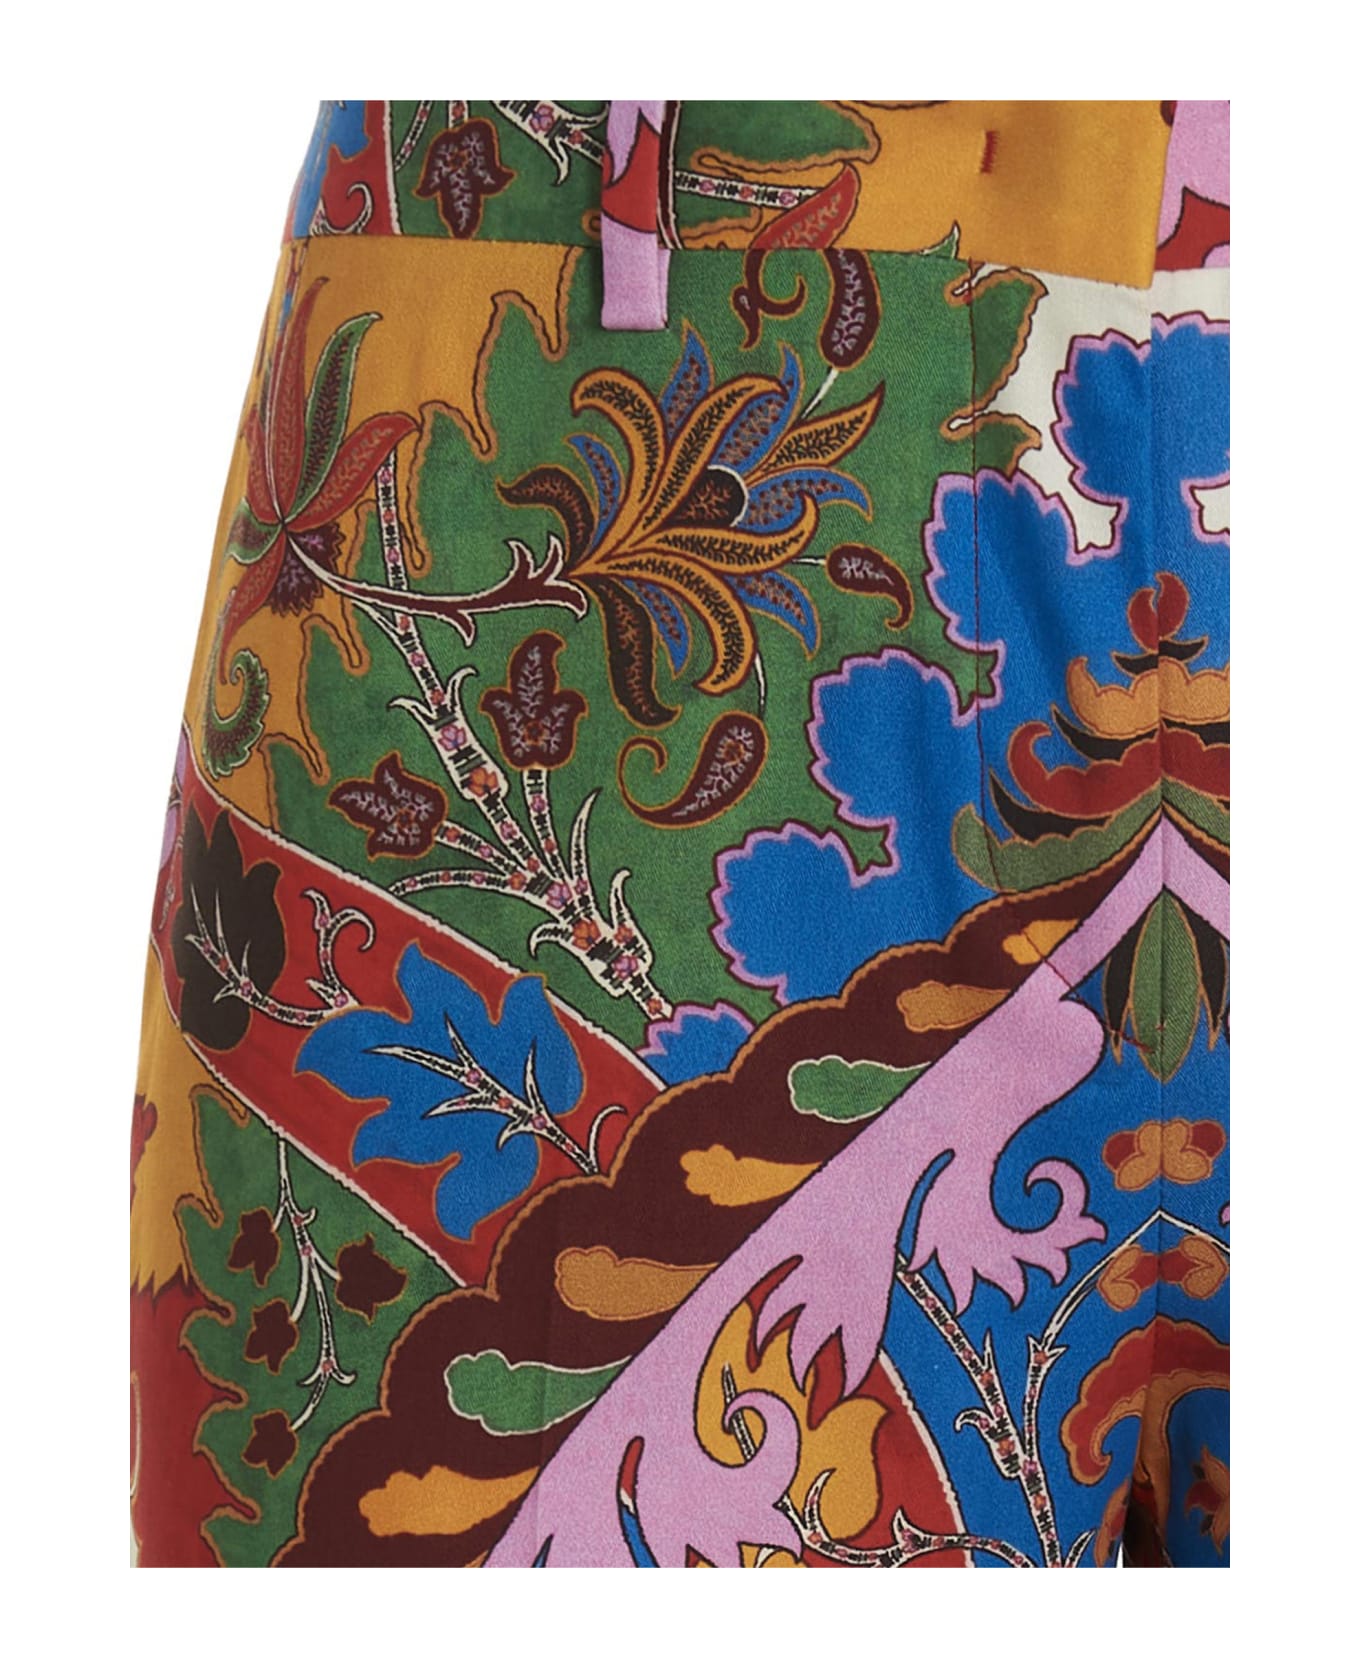 Etro Paisley' Pants - Multicolour